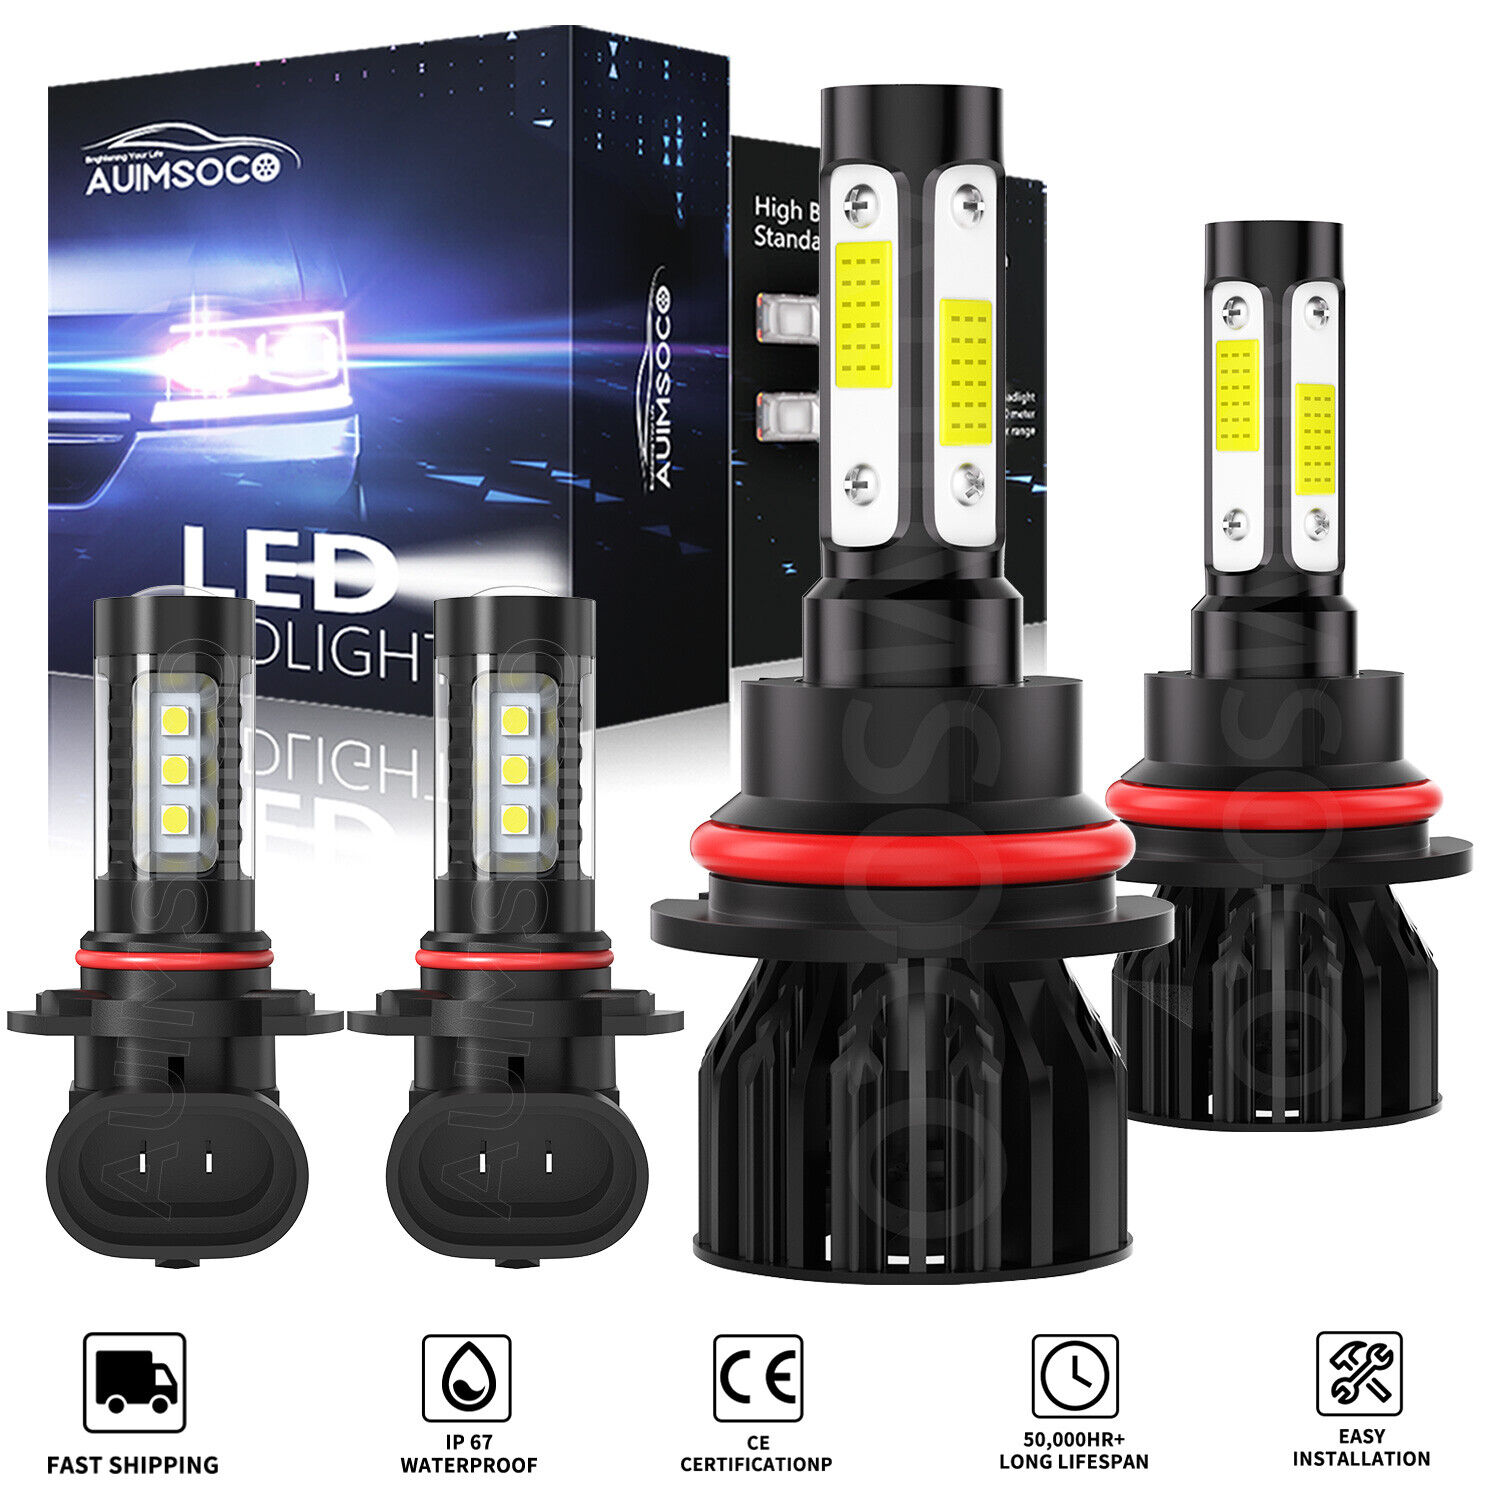 LED Headlight HB5 9007 + 9145 H10 Fog Light Bulbs Kit for Ford Ranger 2001-2011